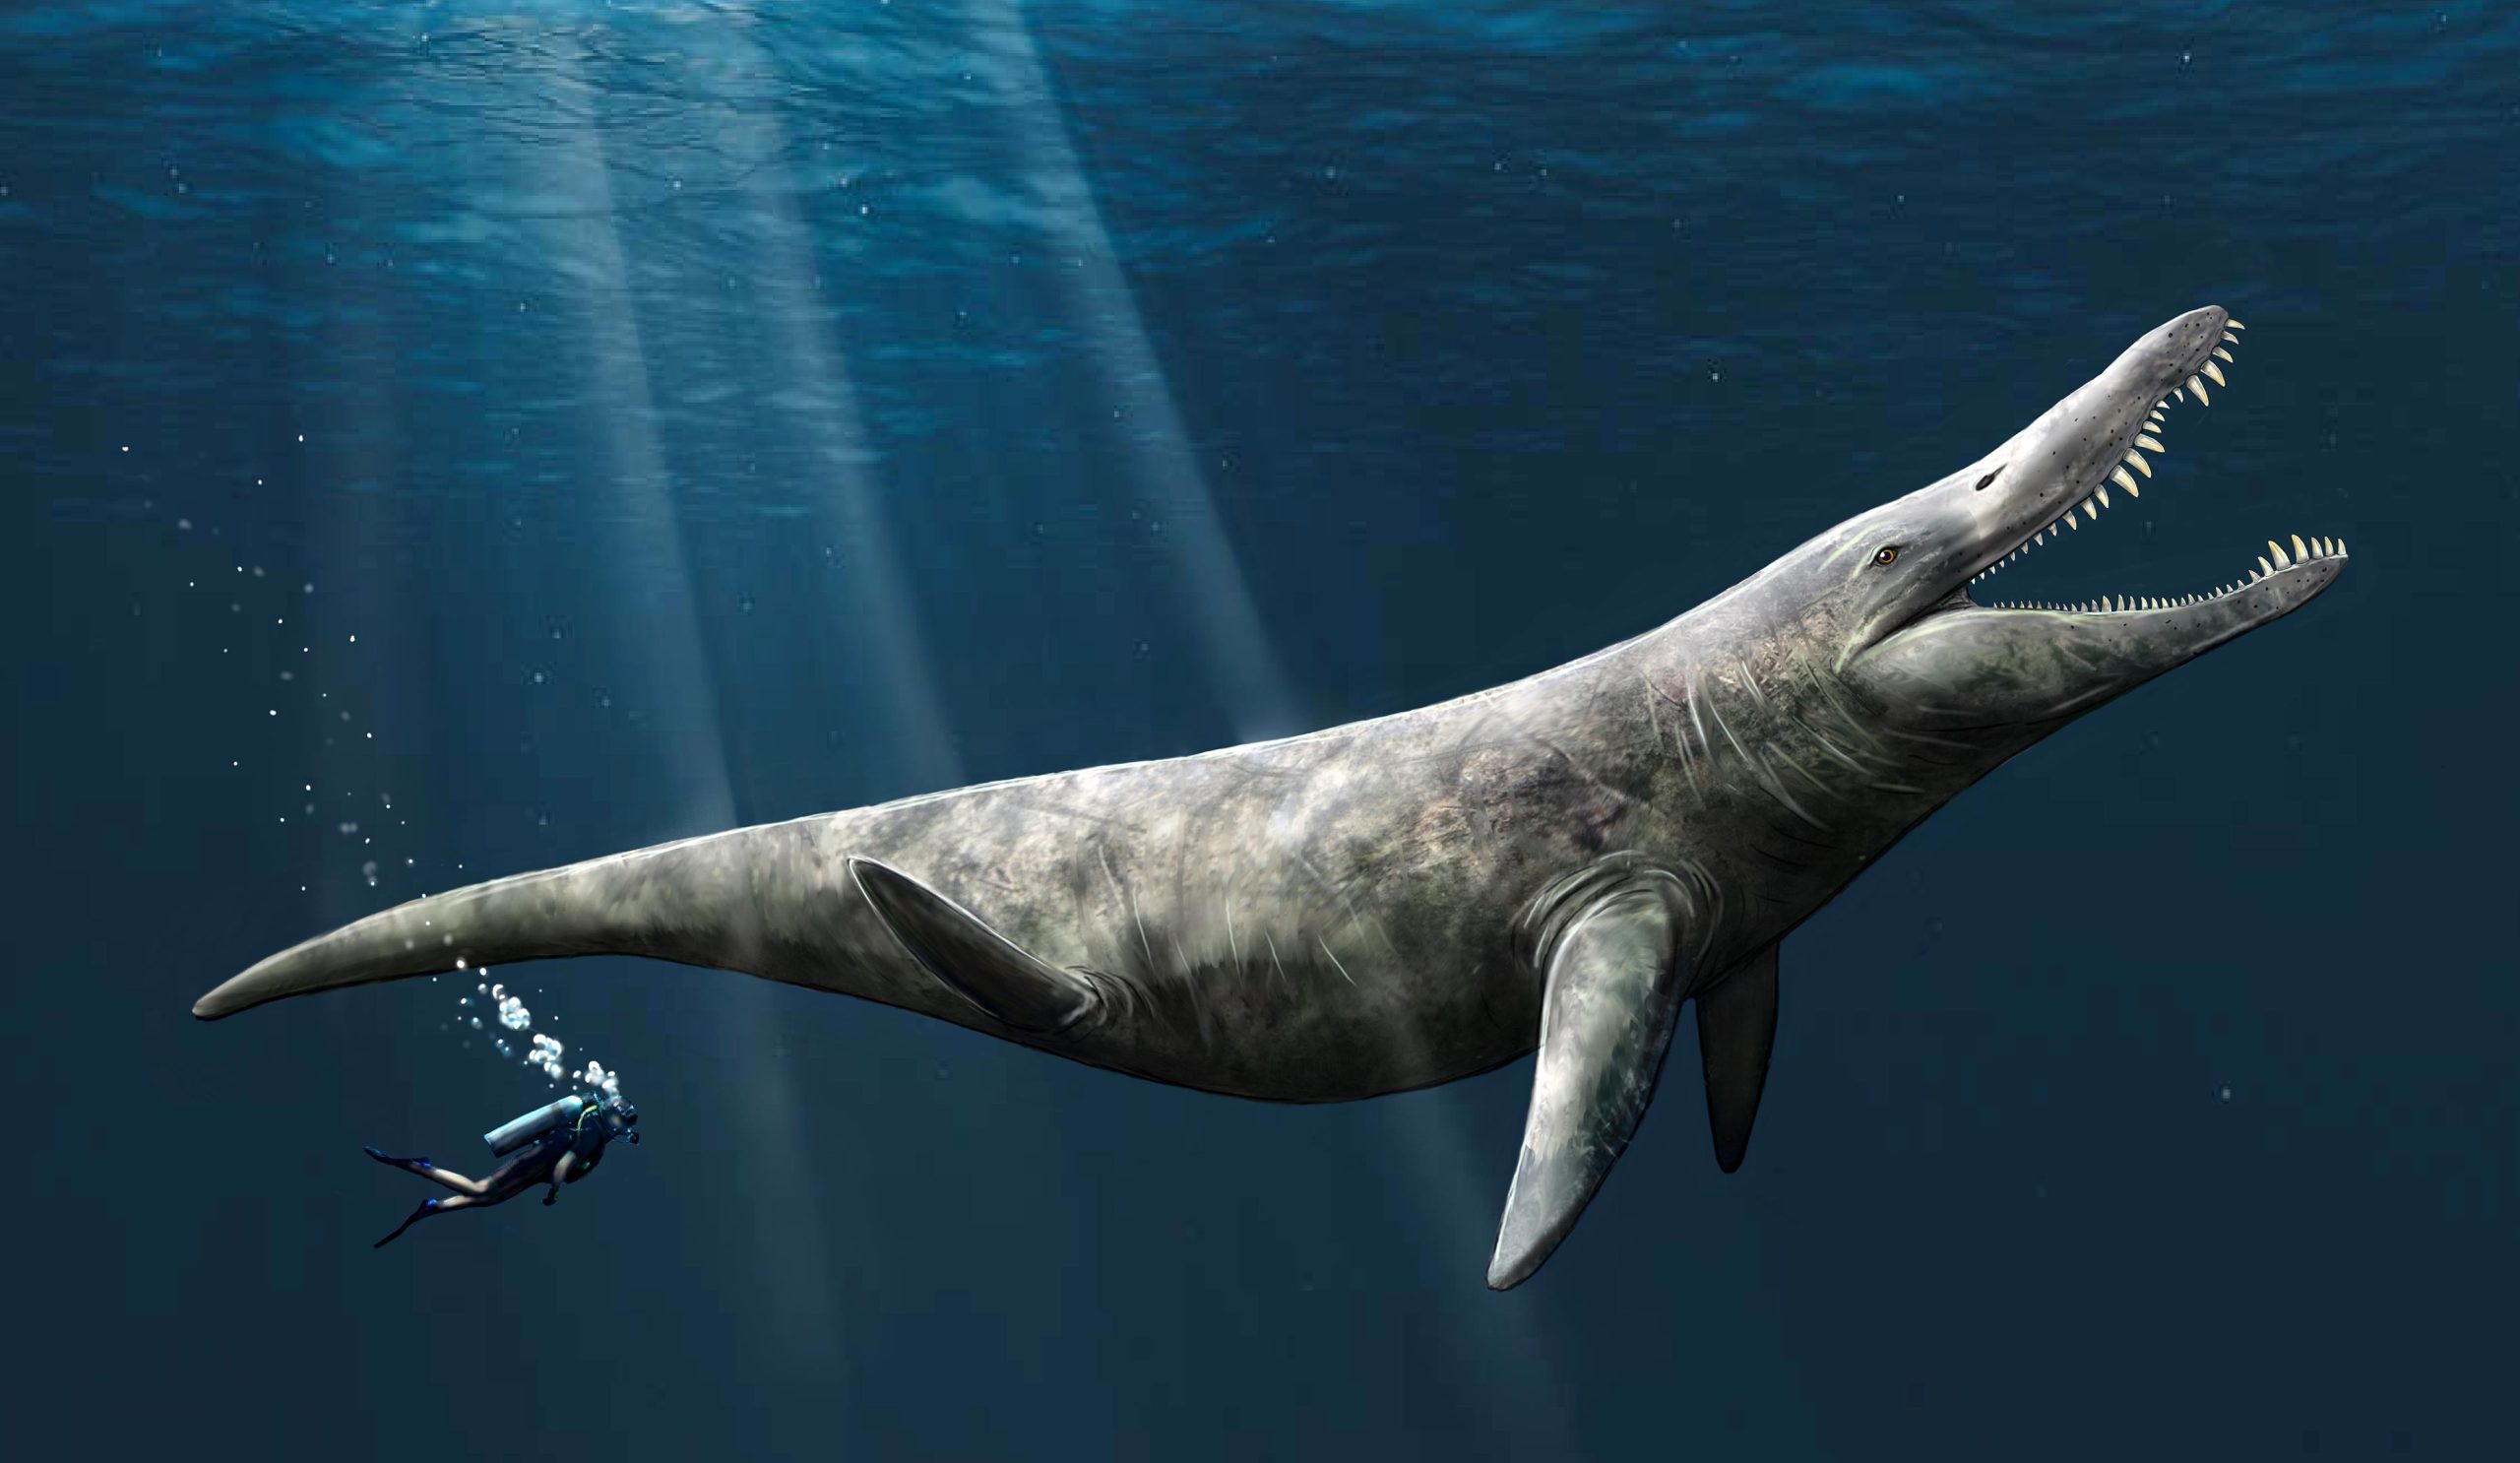 Jurassic denizlerinin deniz canavarları, katil balinaların iki katı büyüklüğündeydi.